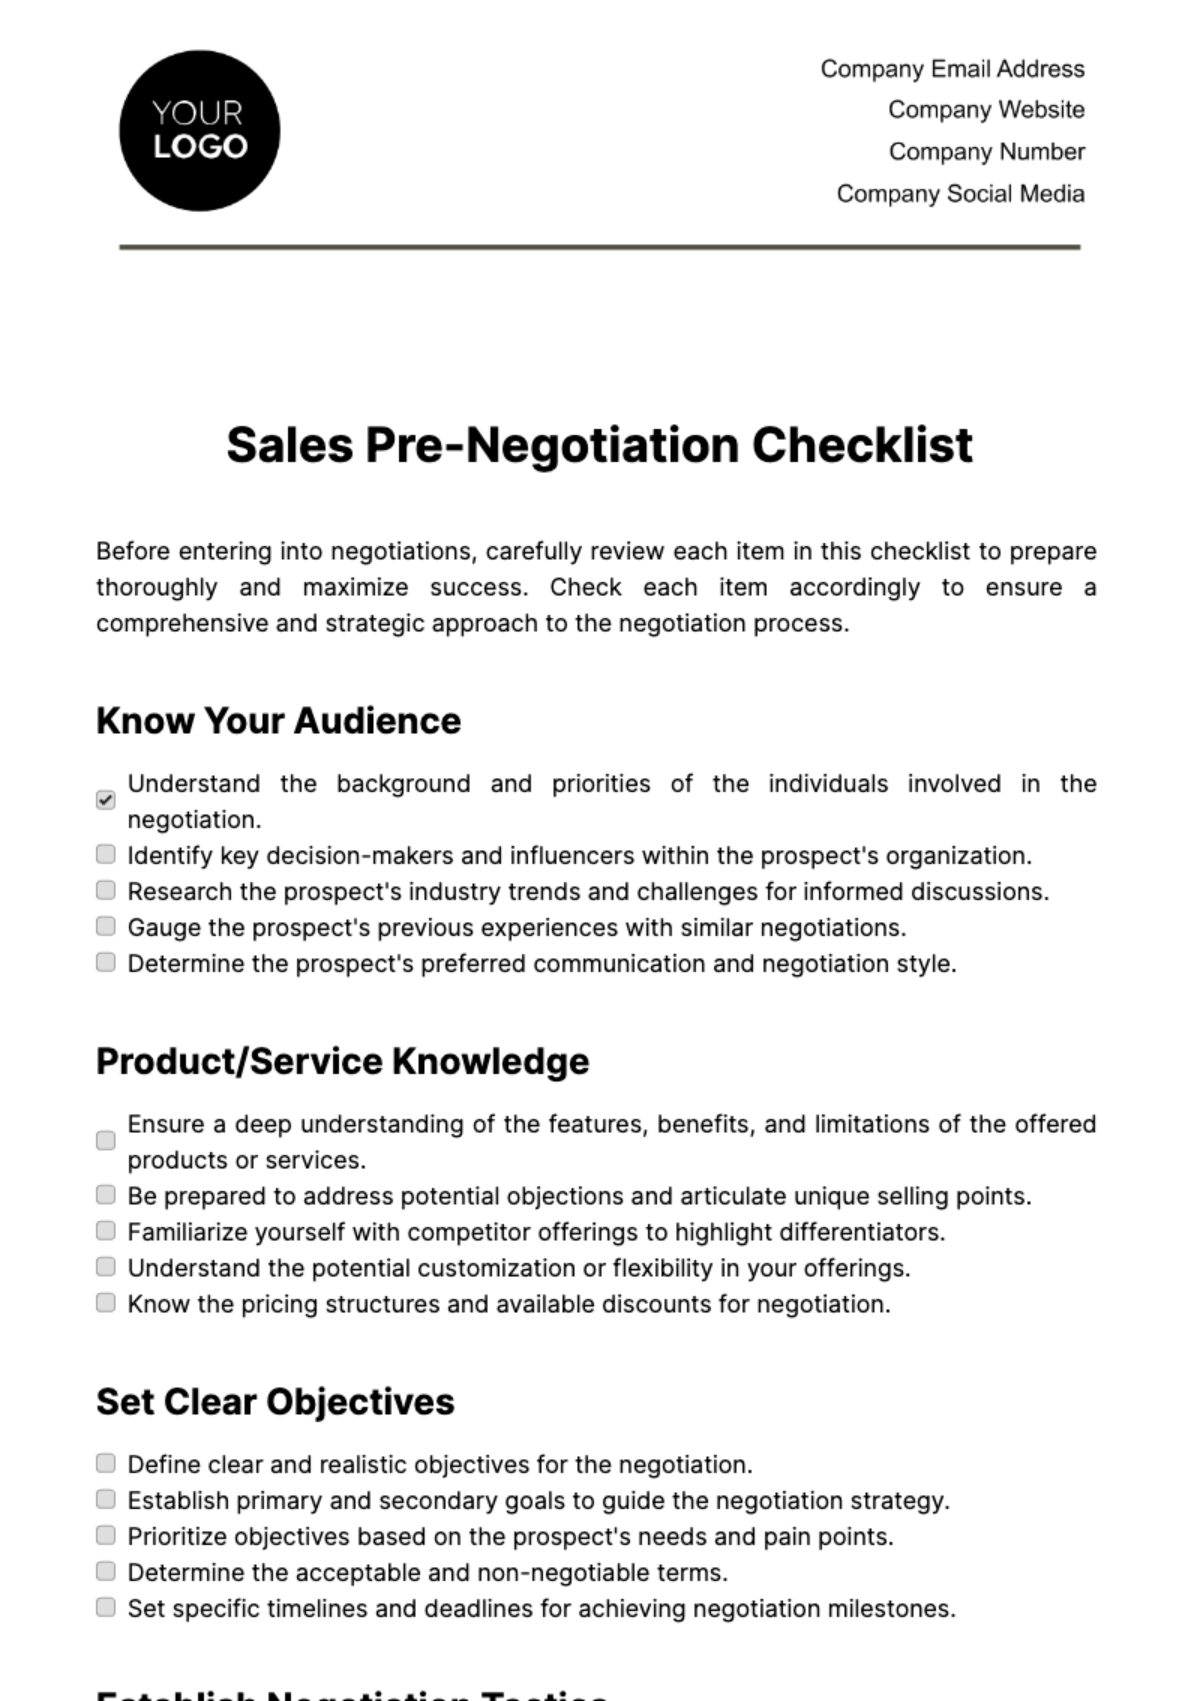 Free Sales Pre-Negotiation Checklist Template